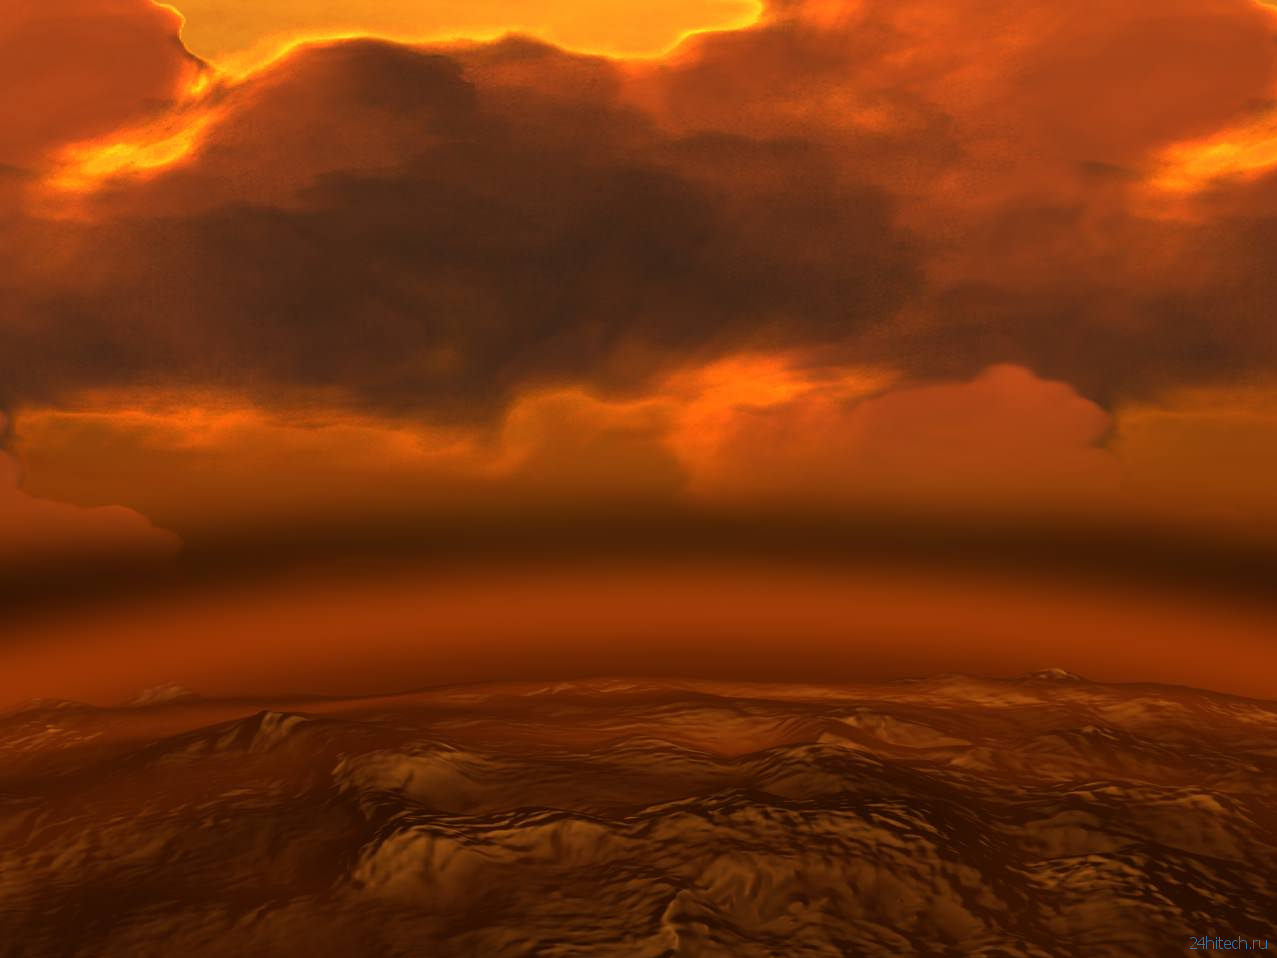 В облаках Венеры могут быть микробы и ученые знают, как они там появились